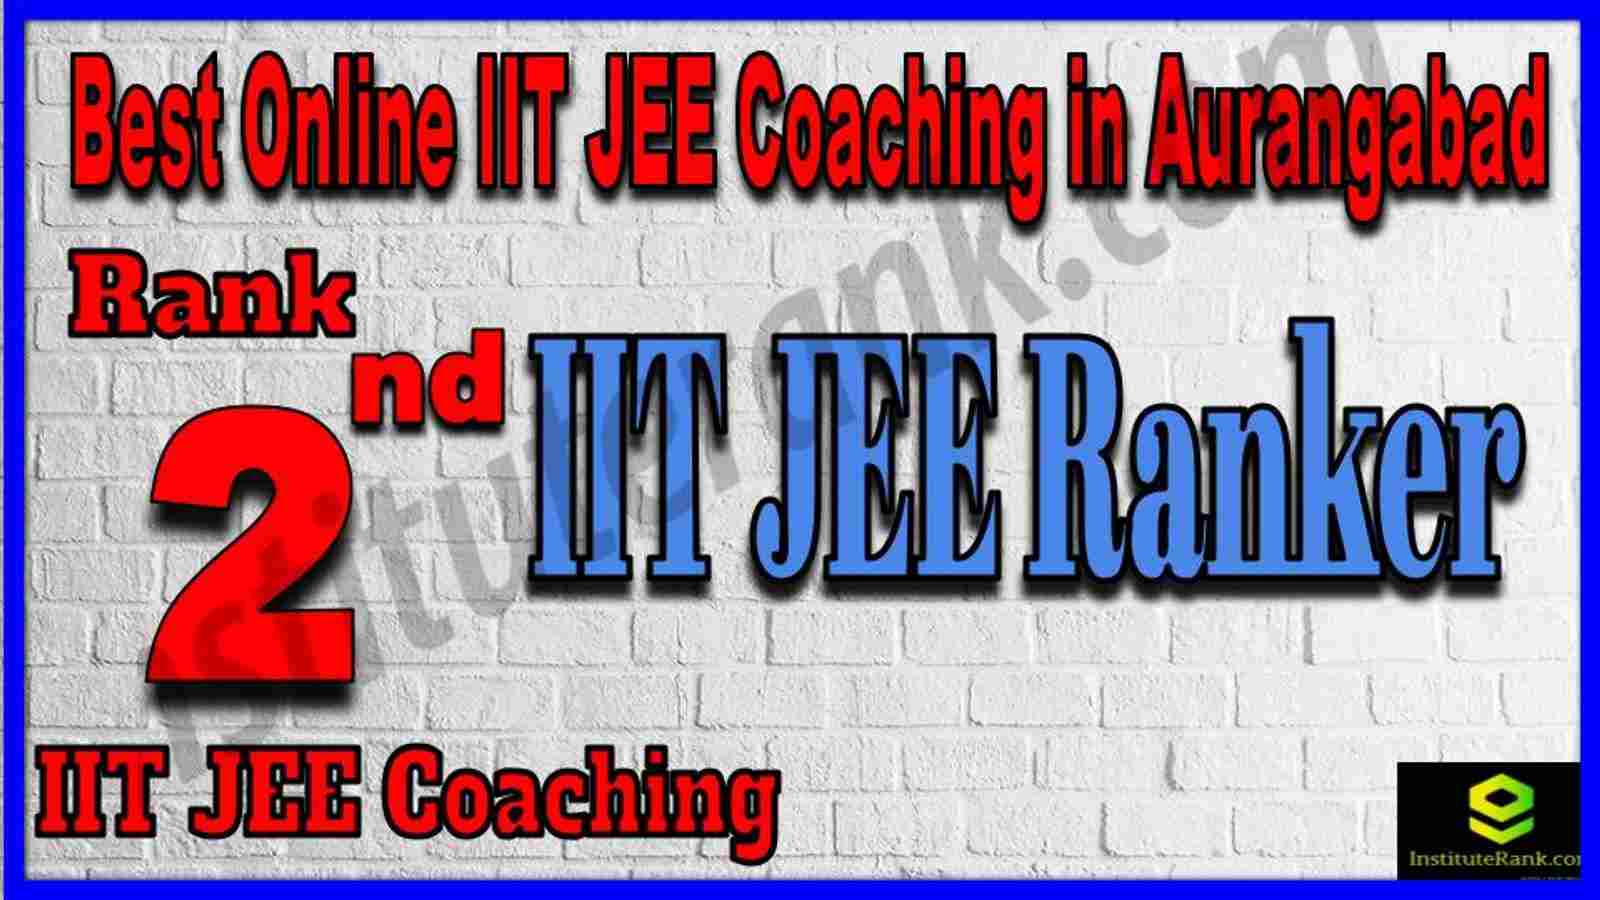 Rank 2nd Best Online IIT JEE Coaching in Aurangabad